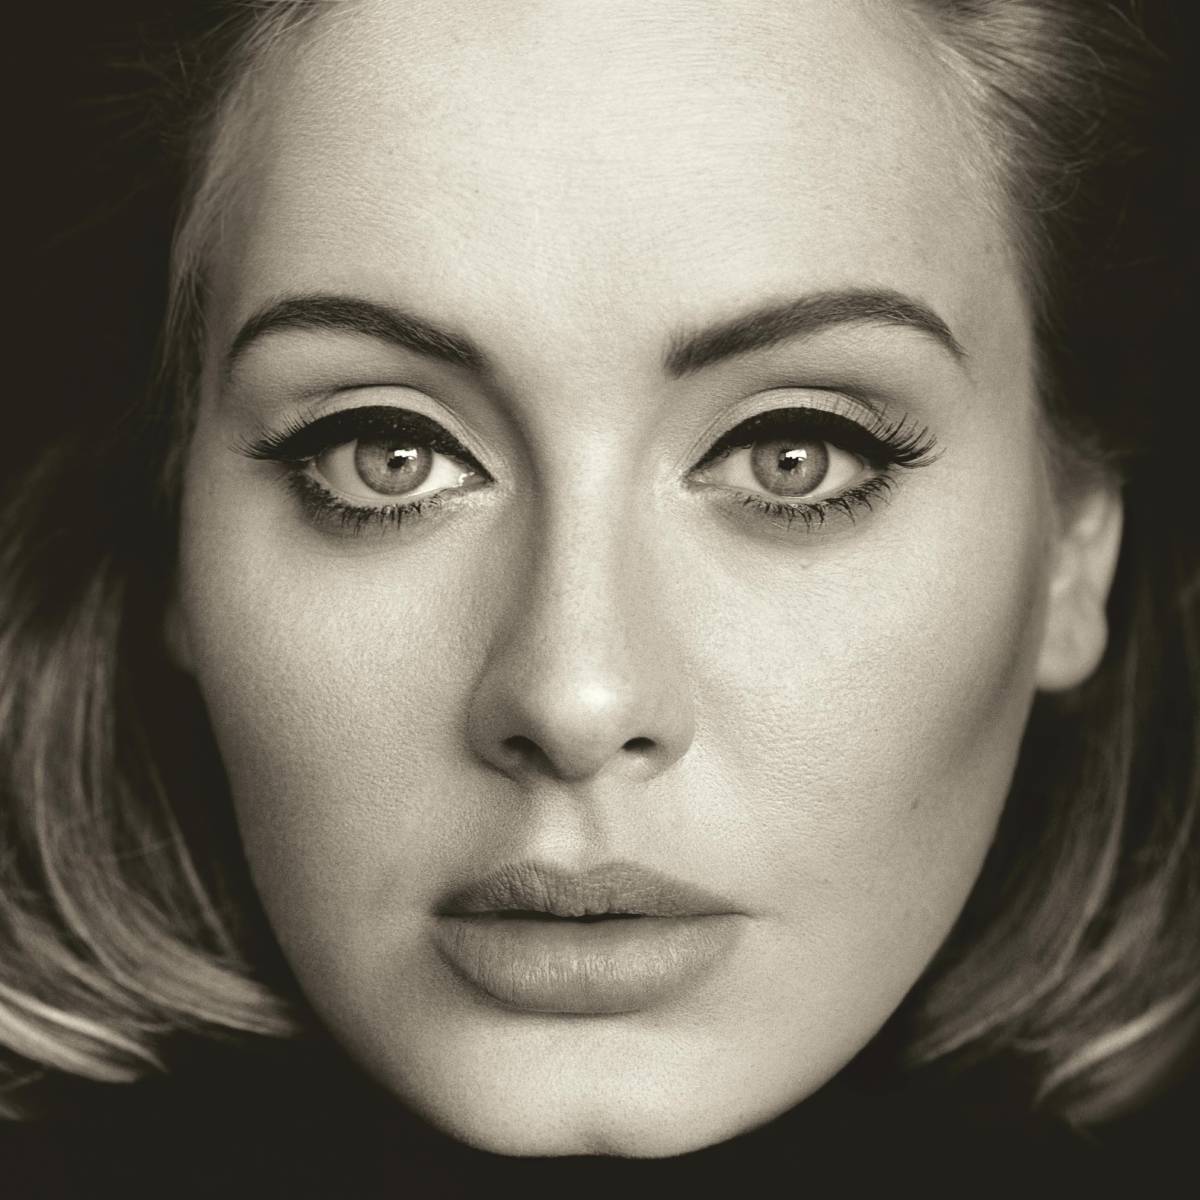 "25" (capa do terceiro álbum de estúdio da Adele)